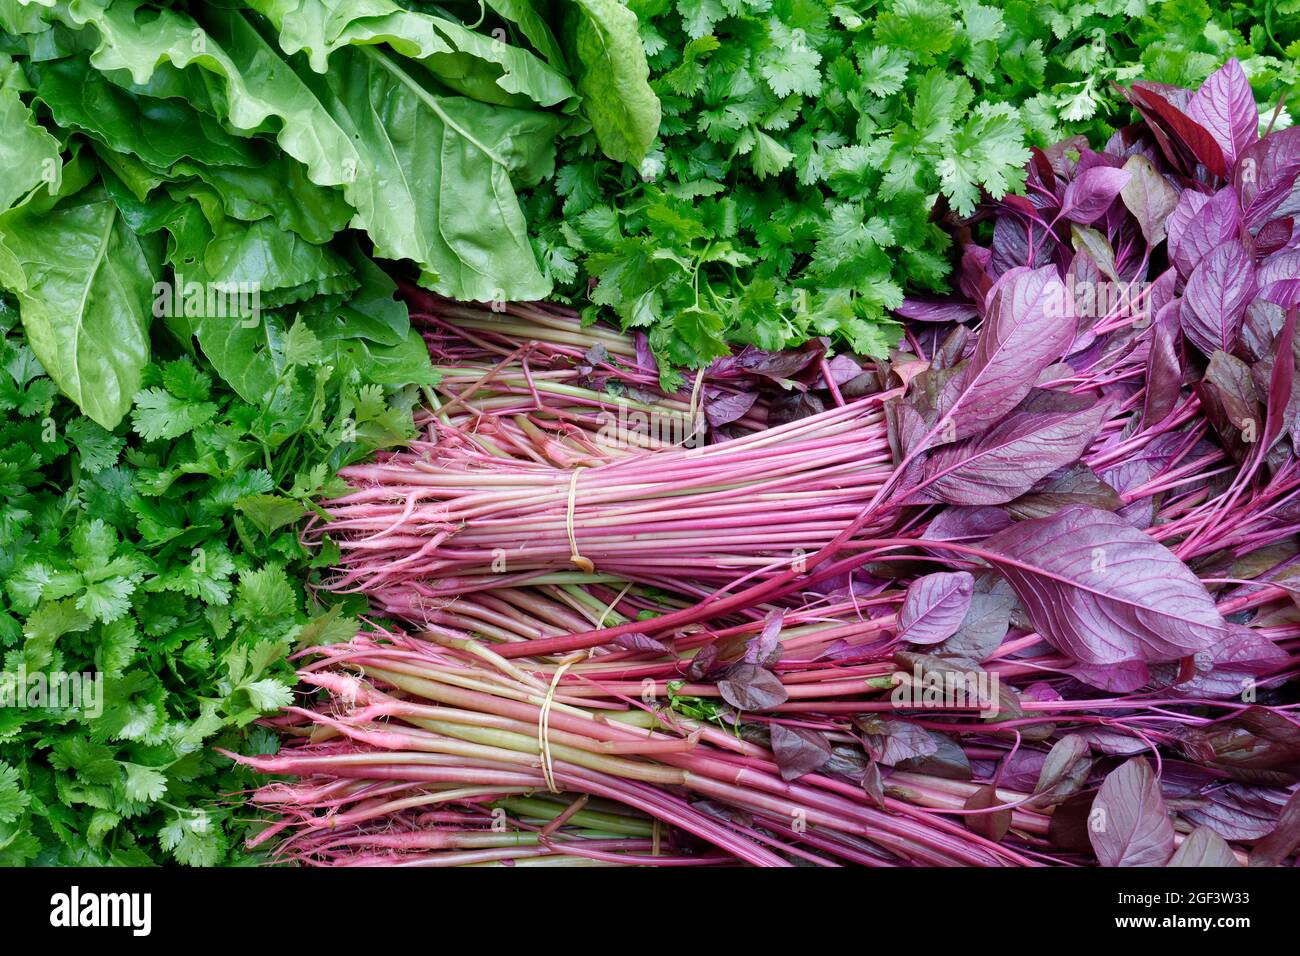 Légumes biologiques fraîchement récoltés : Coriander, Chard et Amaranth rouge Banque D'Images